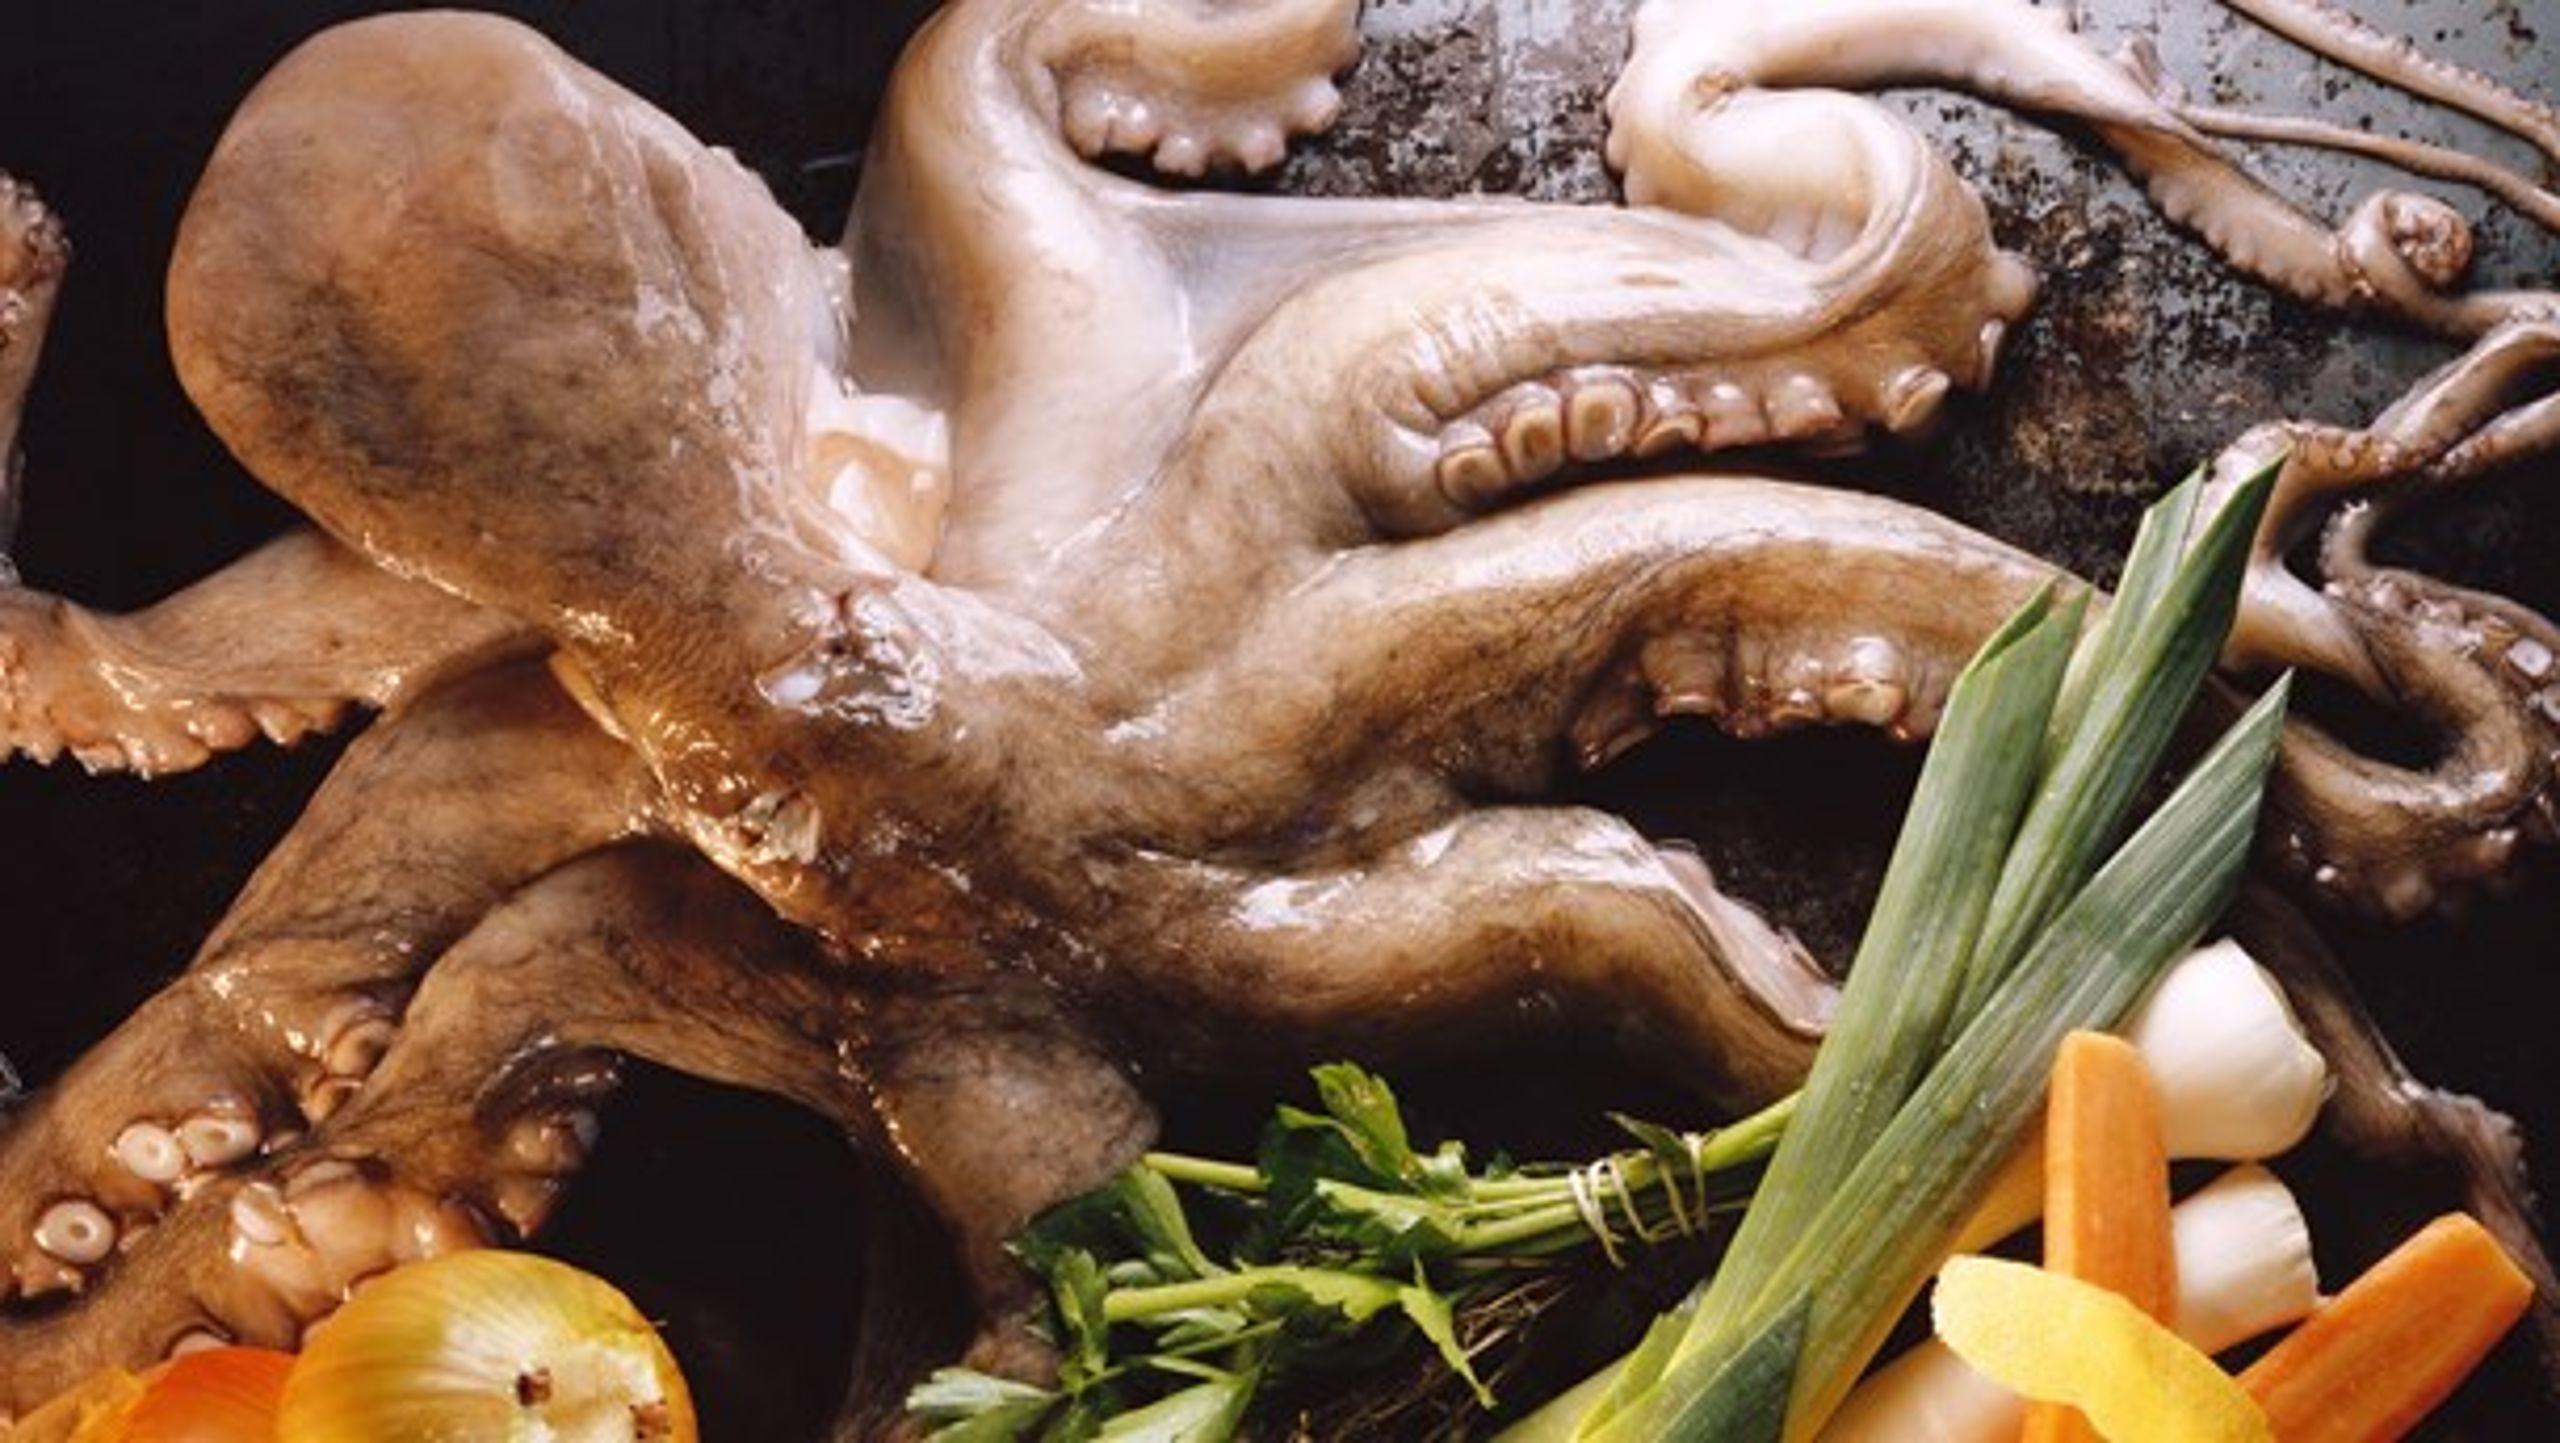 MANGFOLDIGHED: Karteldannelse mindsker variationen af 'havets frugter', som f.eks. delikat blæksprutte.